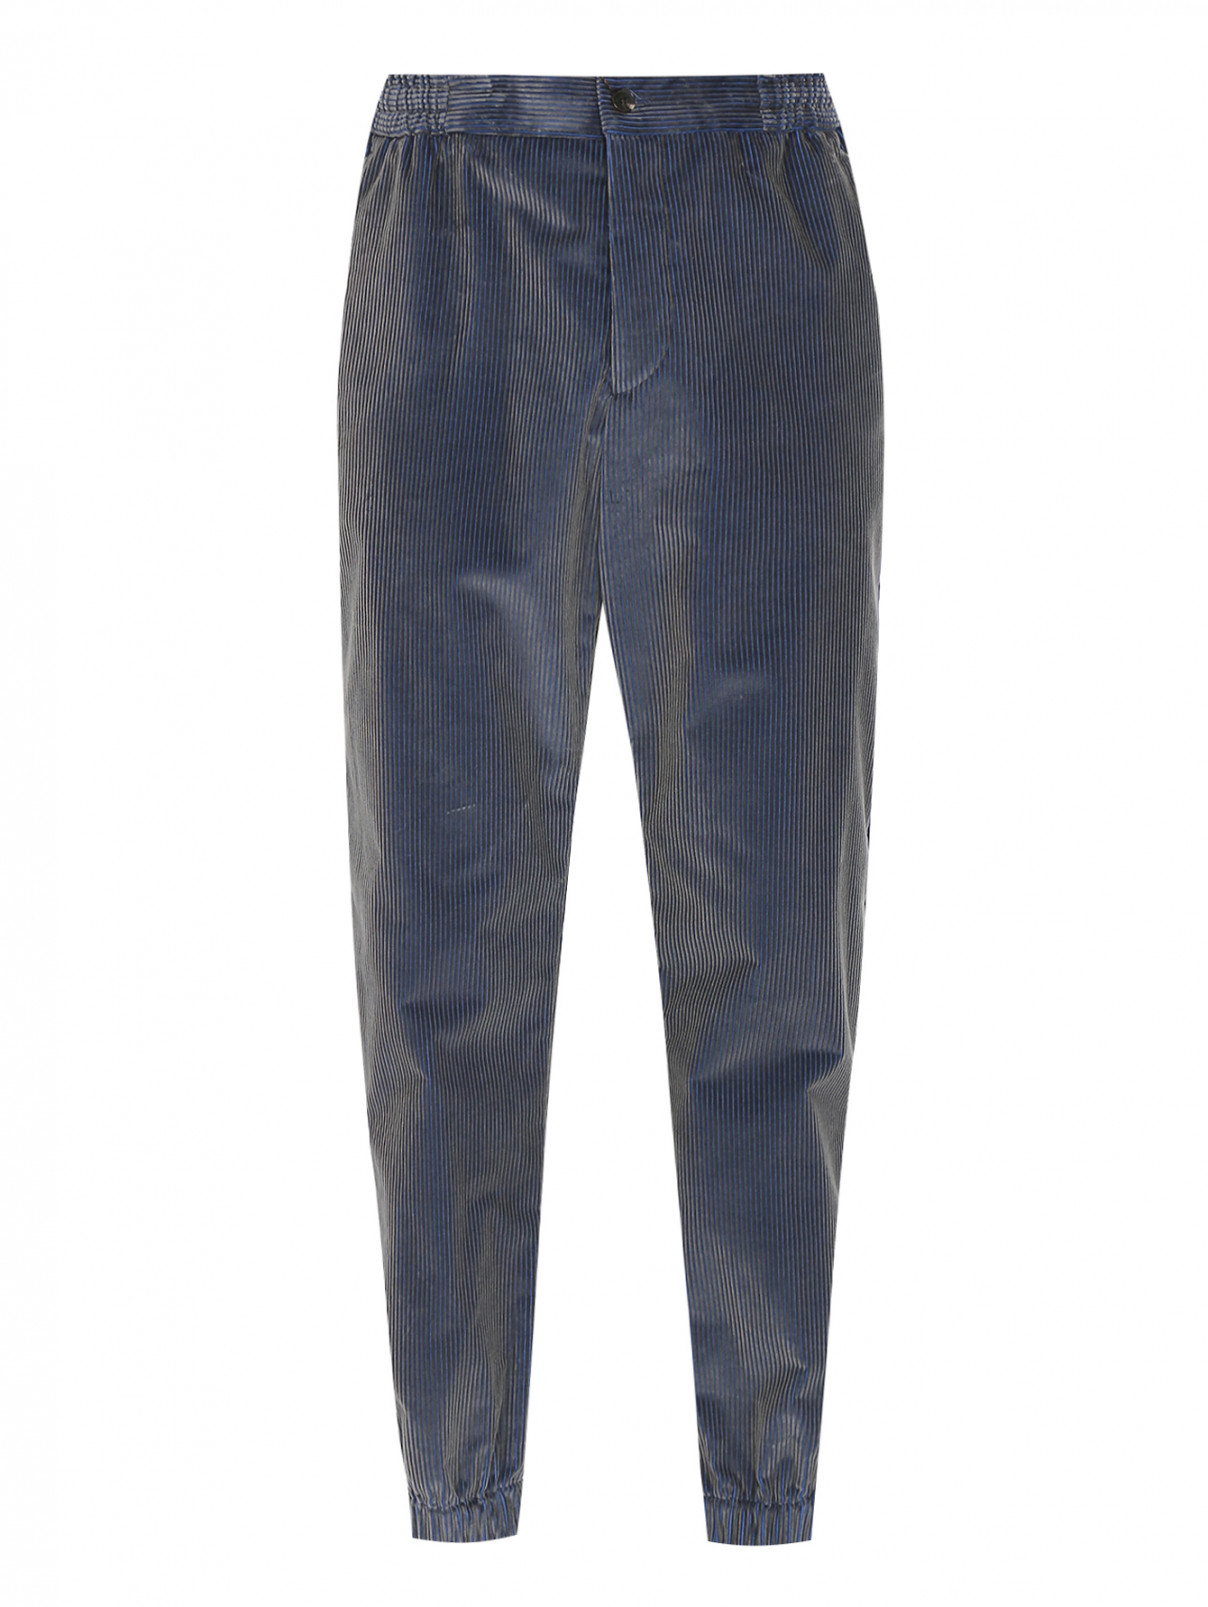 Вельветовые брюки с карманами Etro  –  Общий вид  – Цвет:  Синий